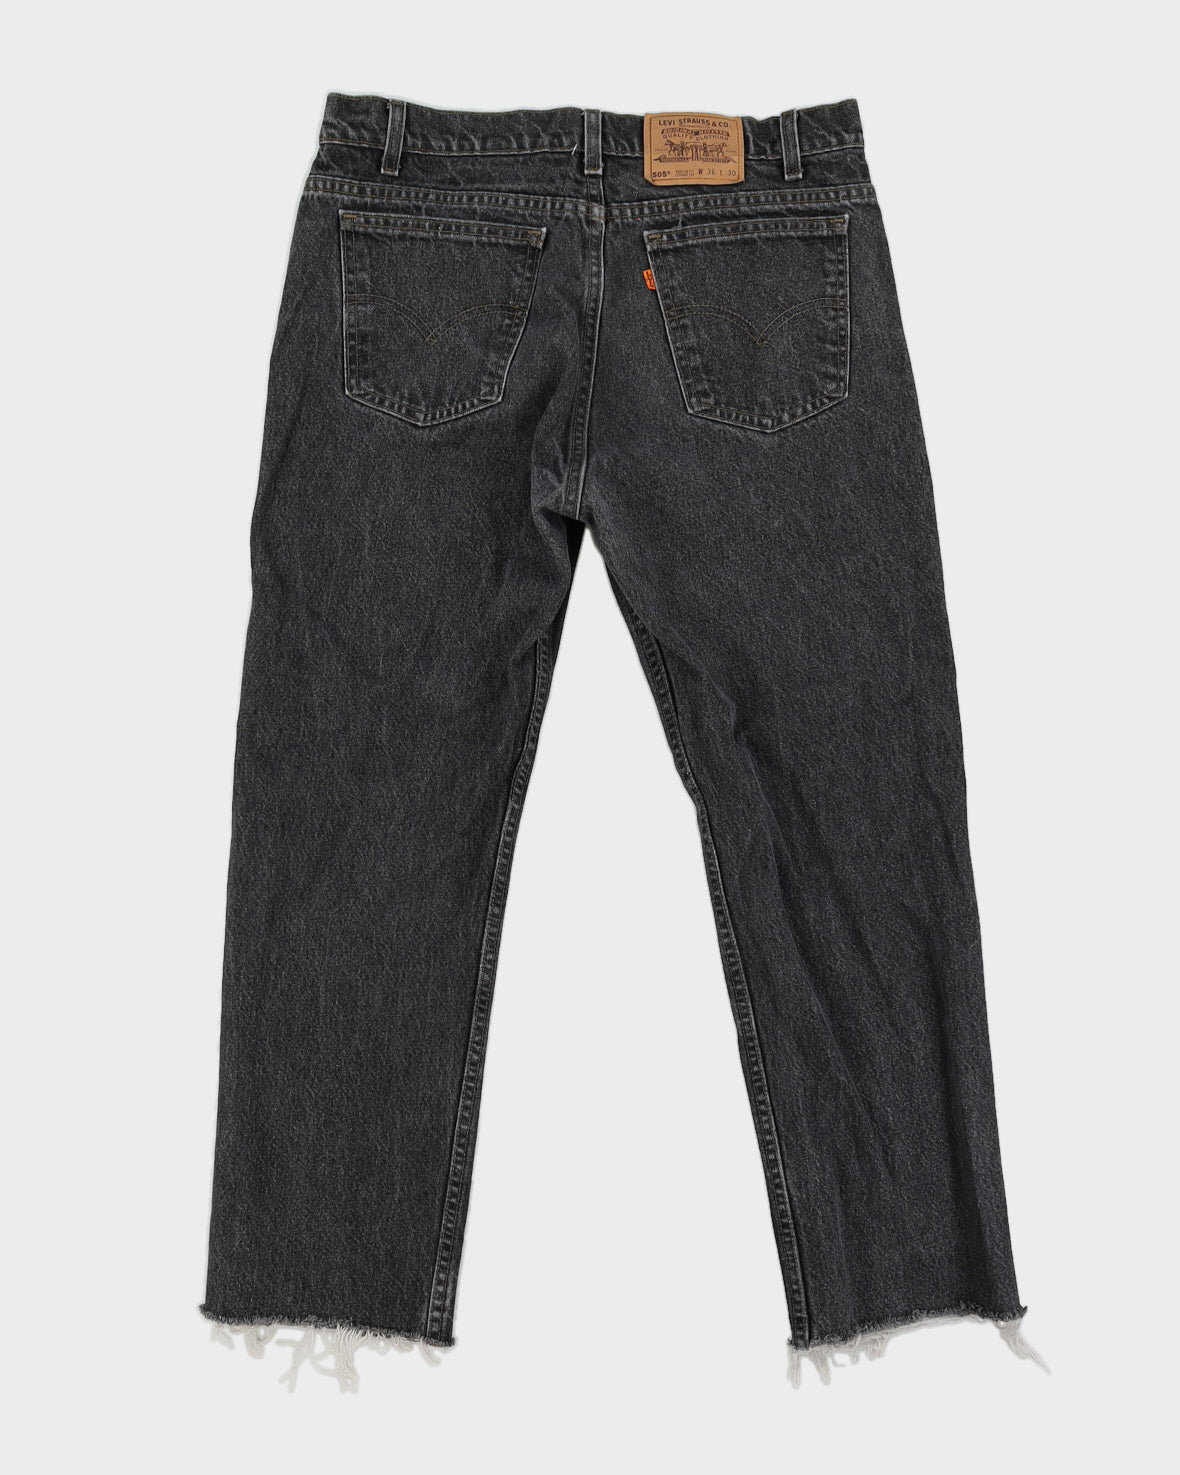 Vintage 80s Levi's Orange Tab Black Light Washed Jeans - W36 L28